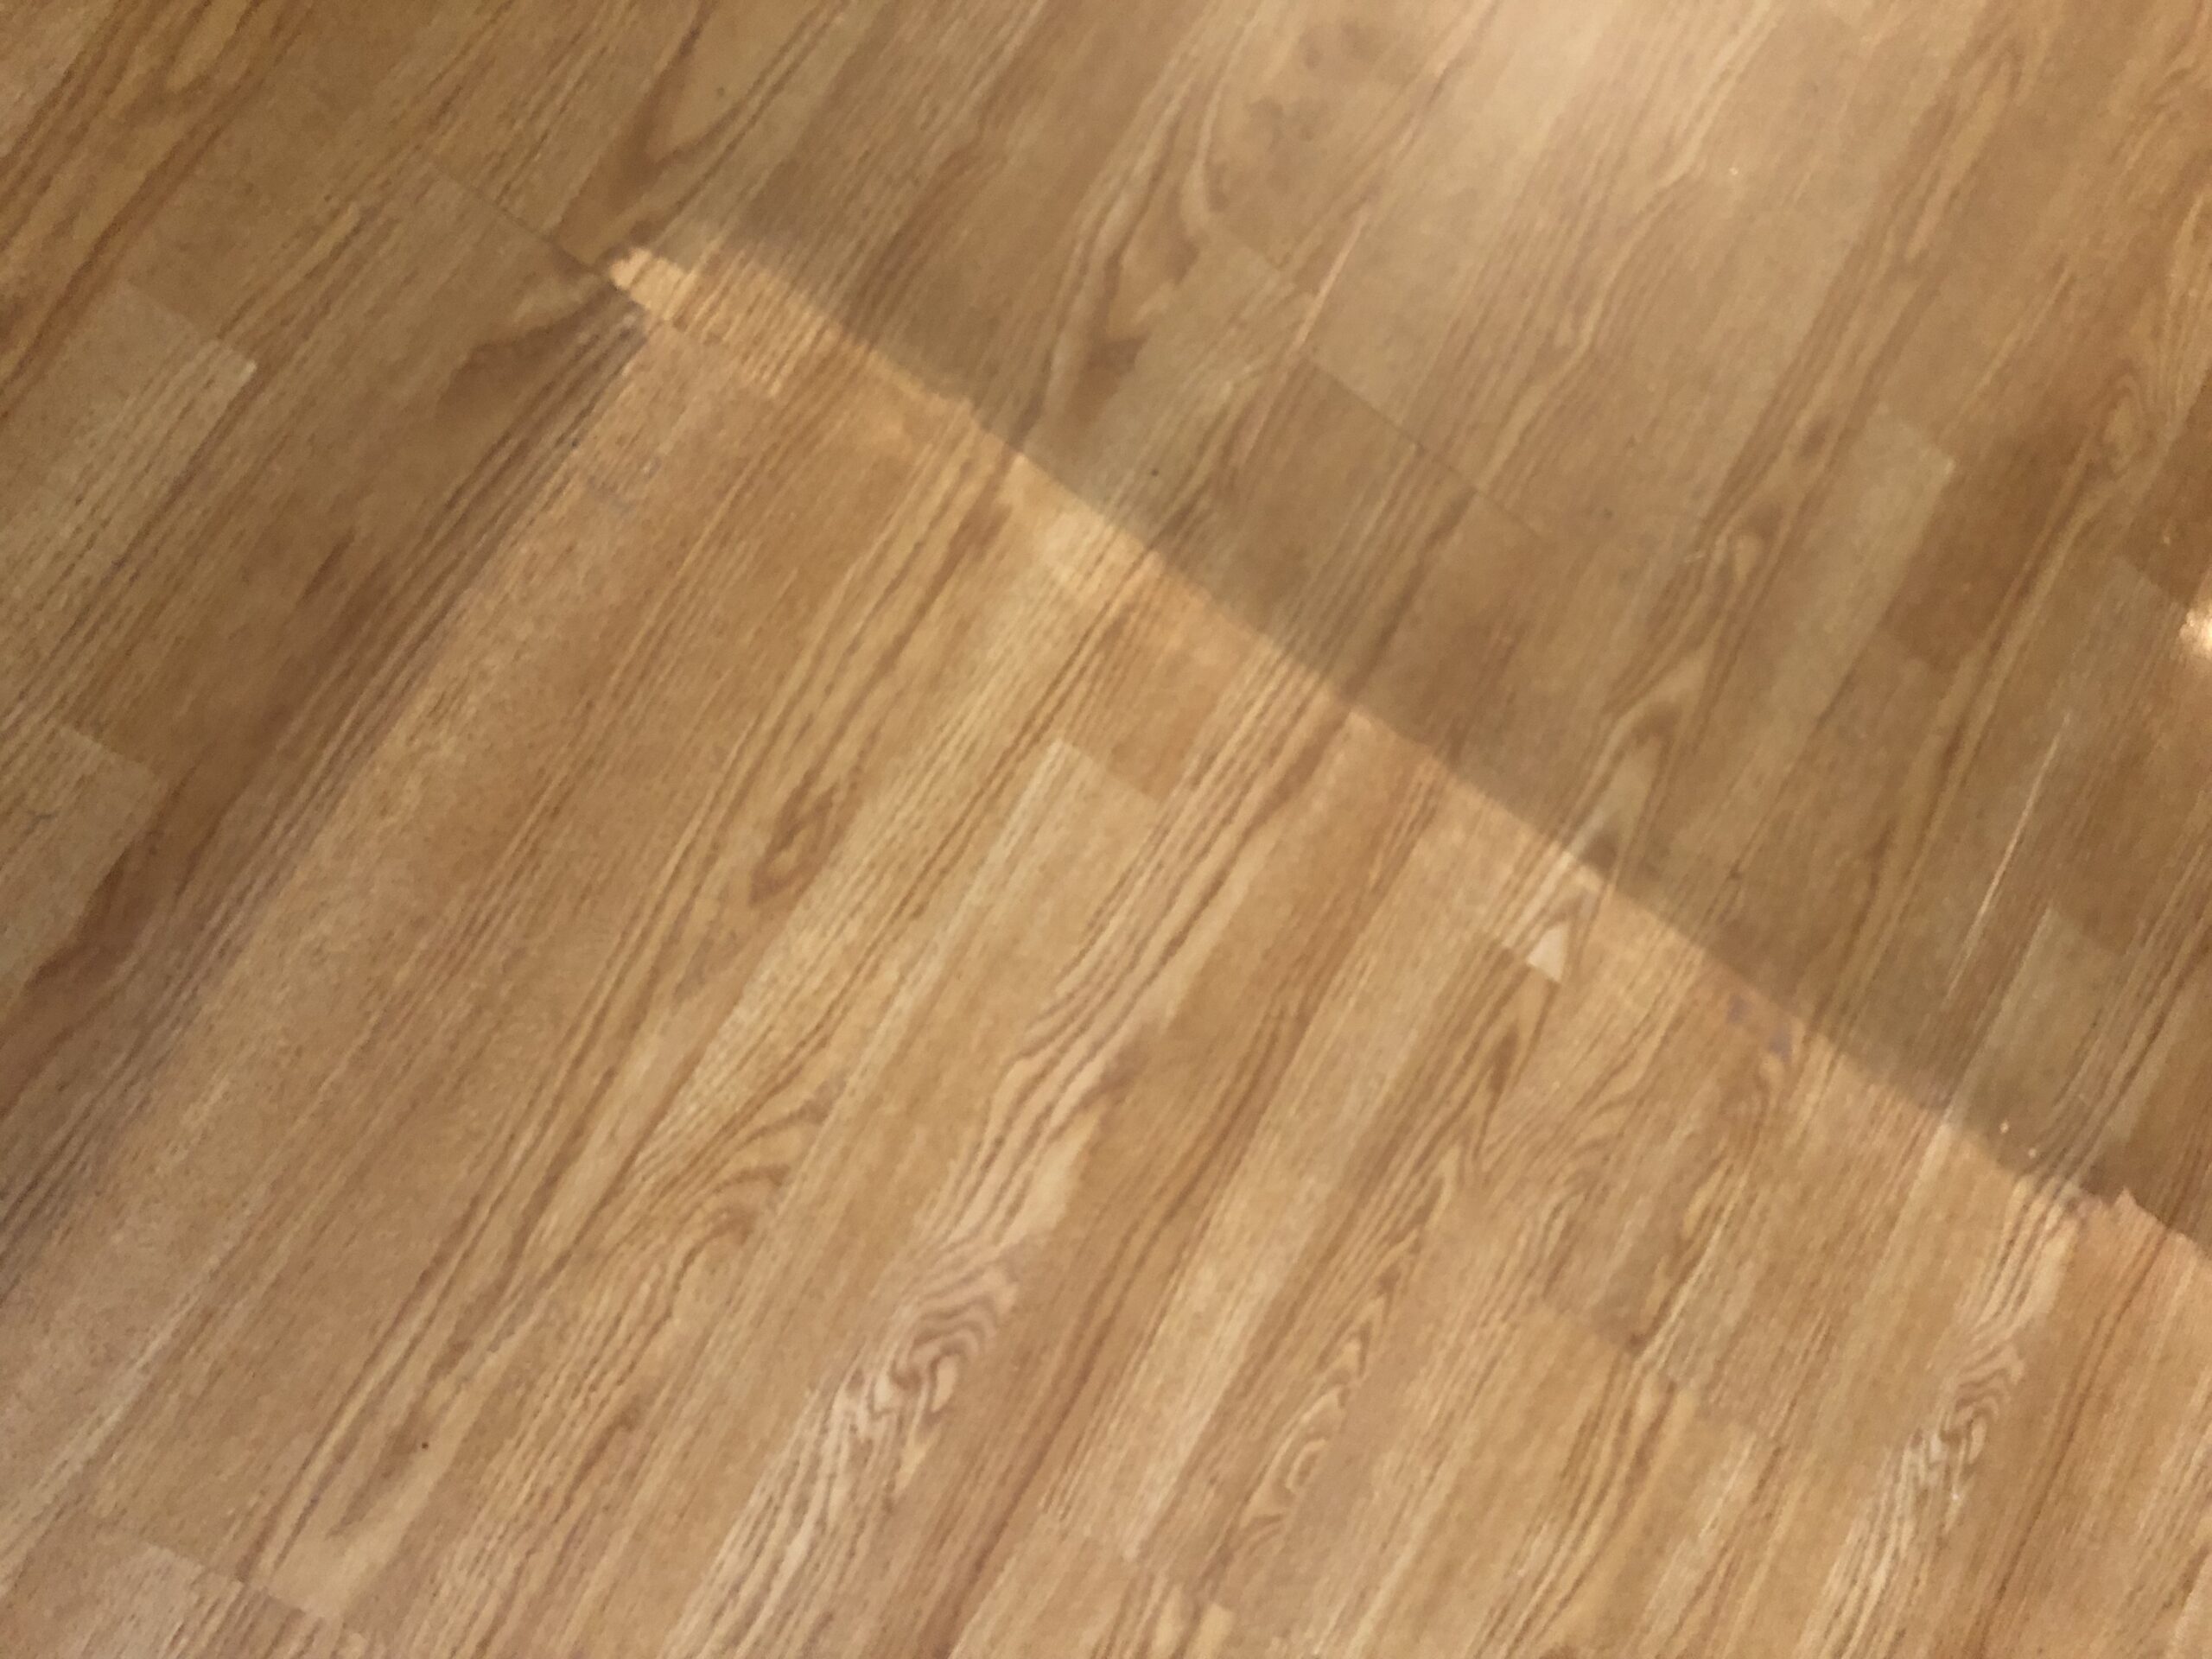 wood floor with wax bulidup wax removal